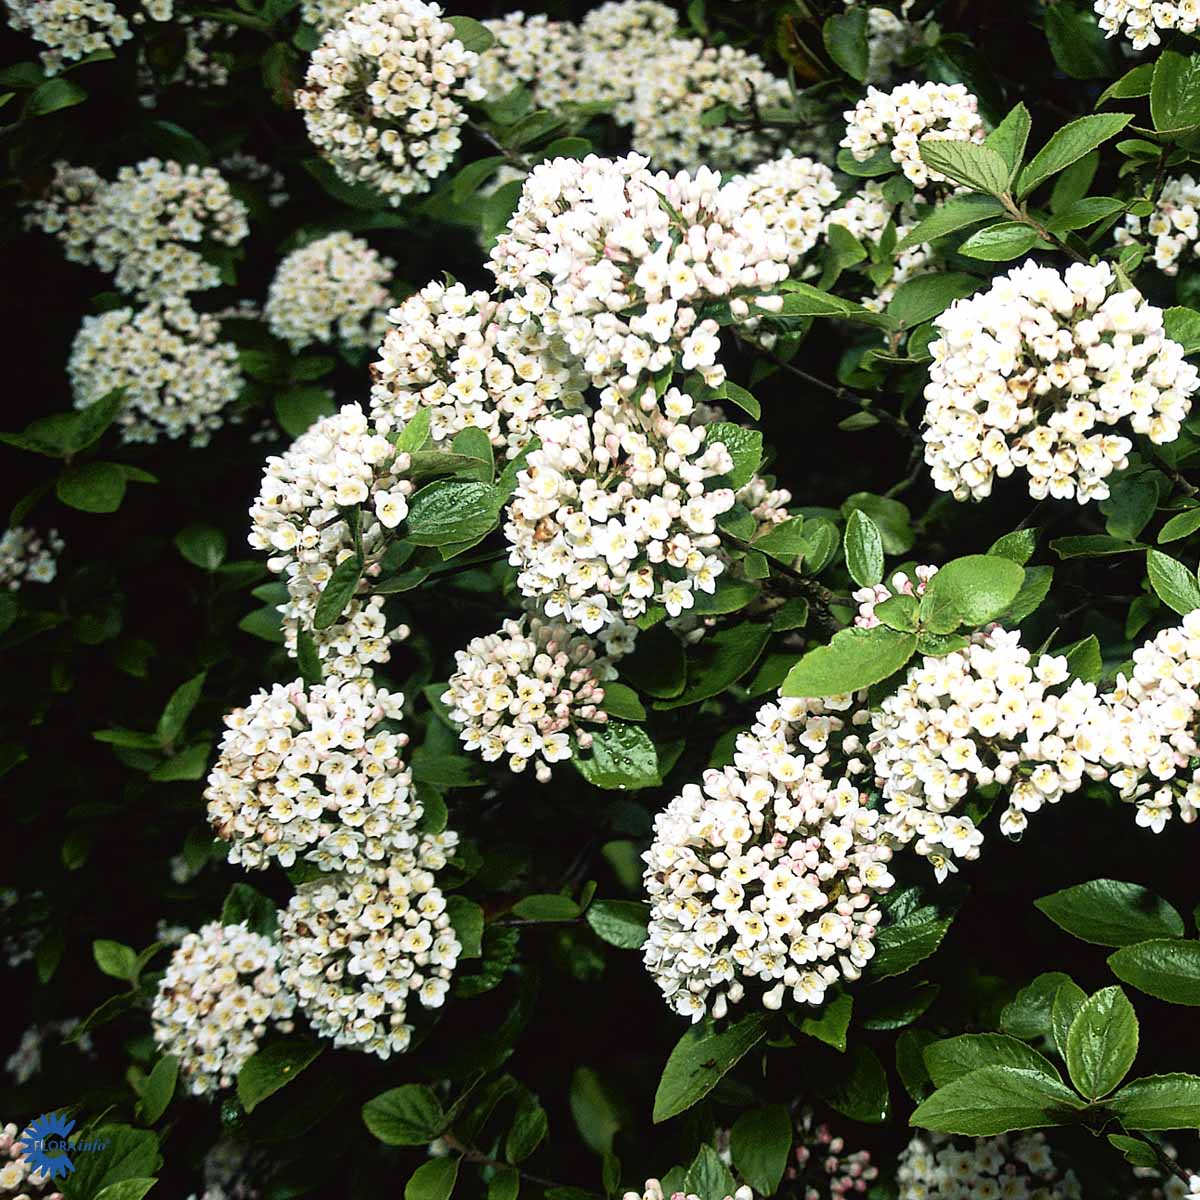 Smukke og duftende hvide kugler af blomster på blomstrende duftsnebolle, her hvor det kønne og meget blanke grønne løv og blade også ses